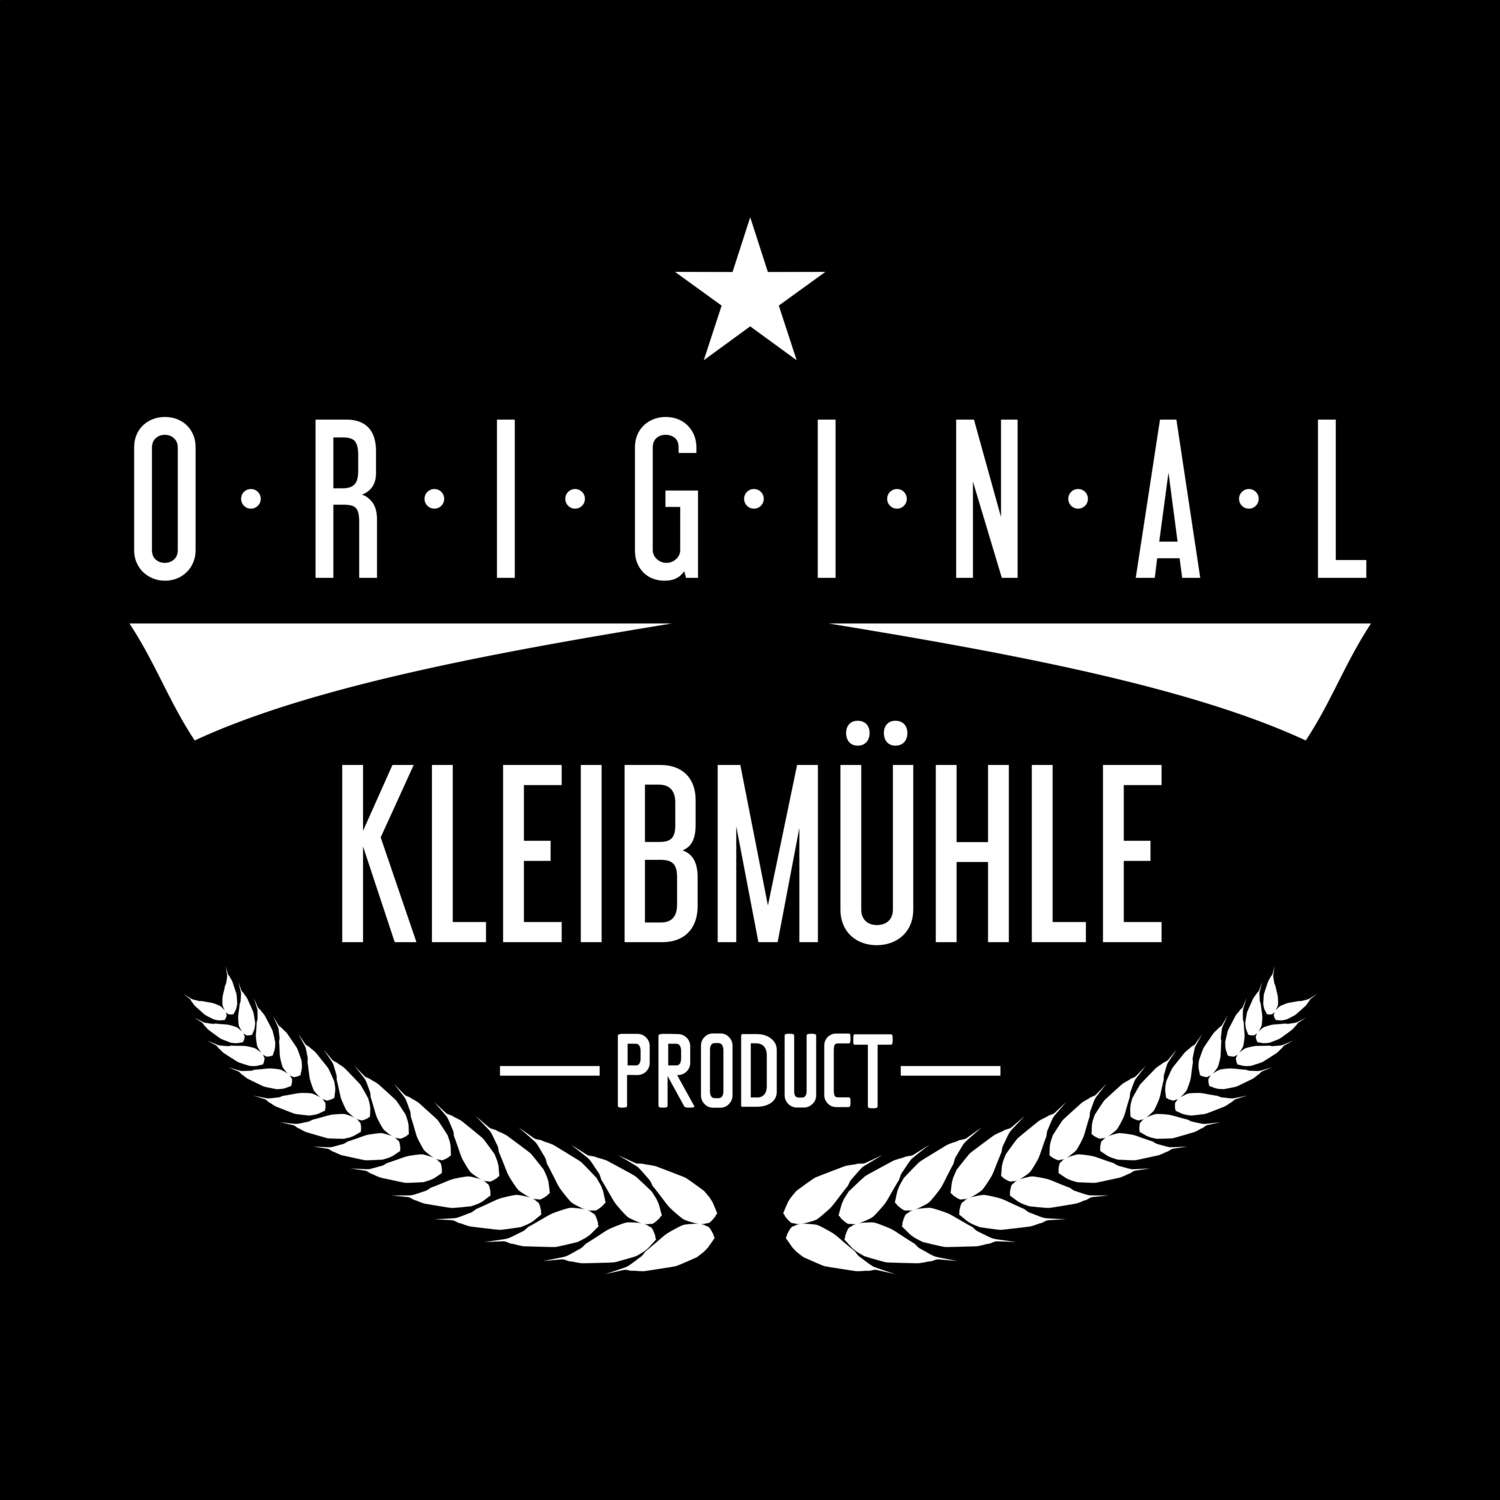 Kleibmühle T-Shirt »Original Product«